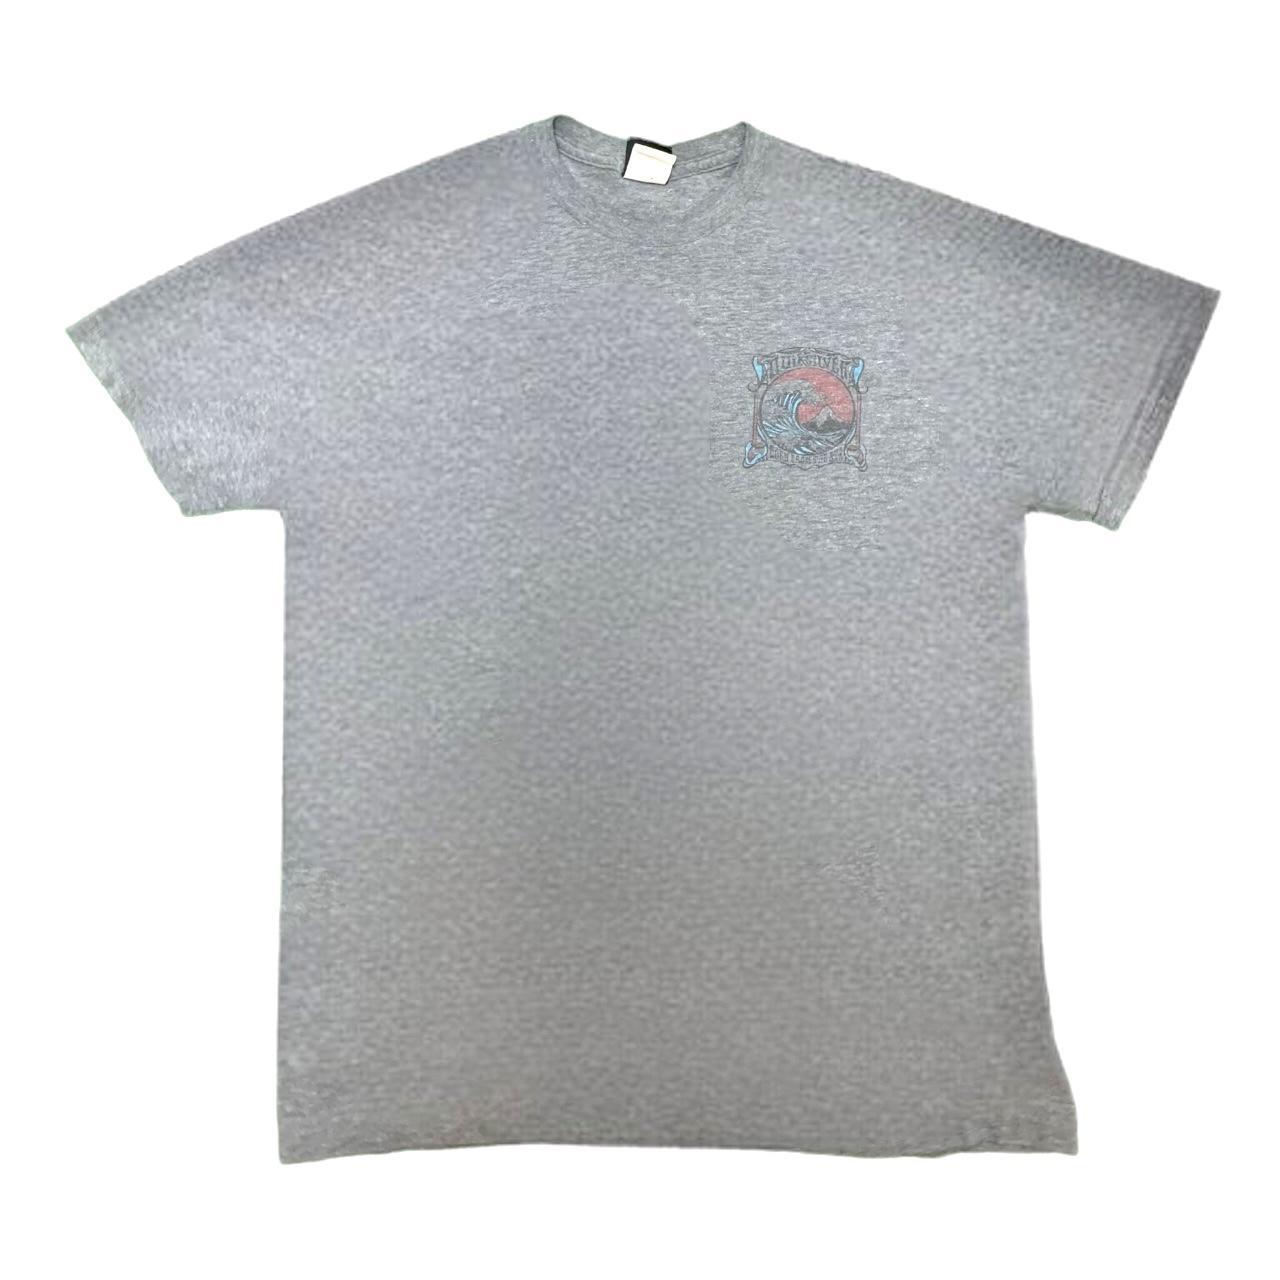 Quiksilver Men's Grey T-shirt